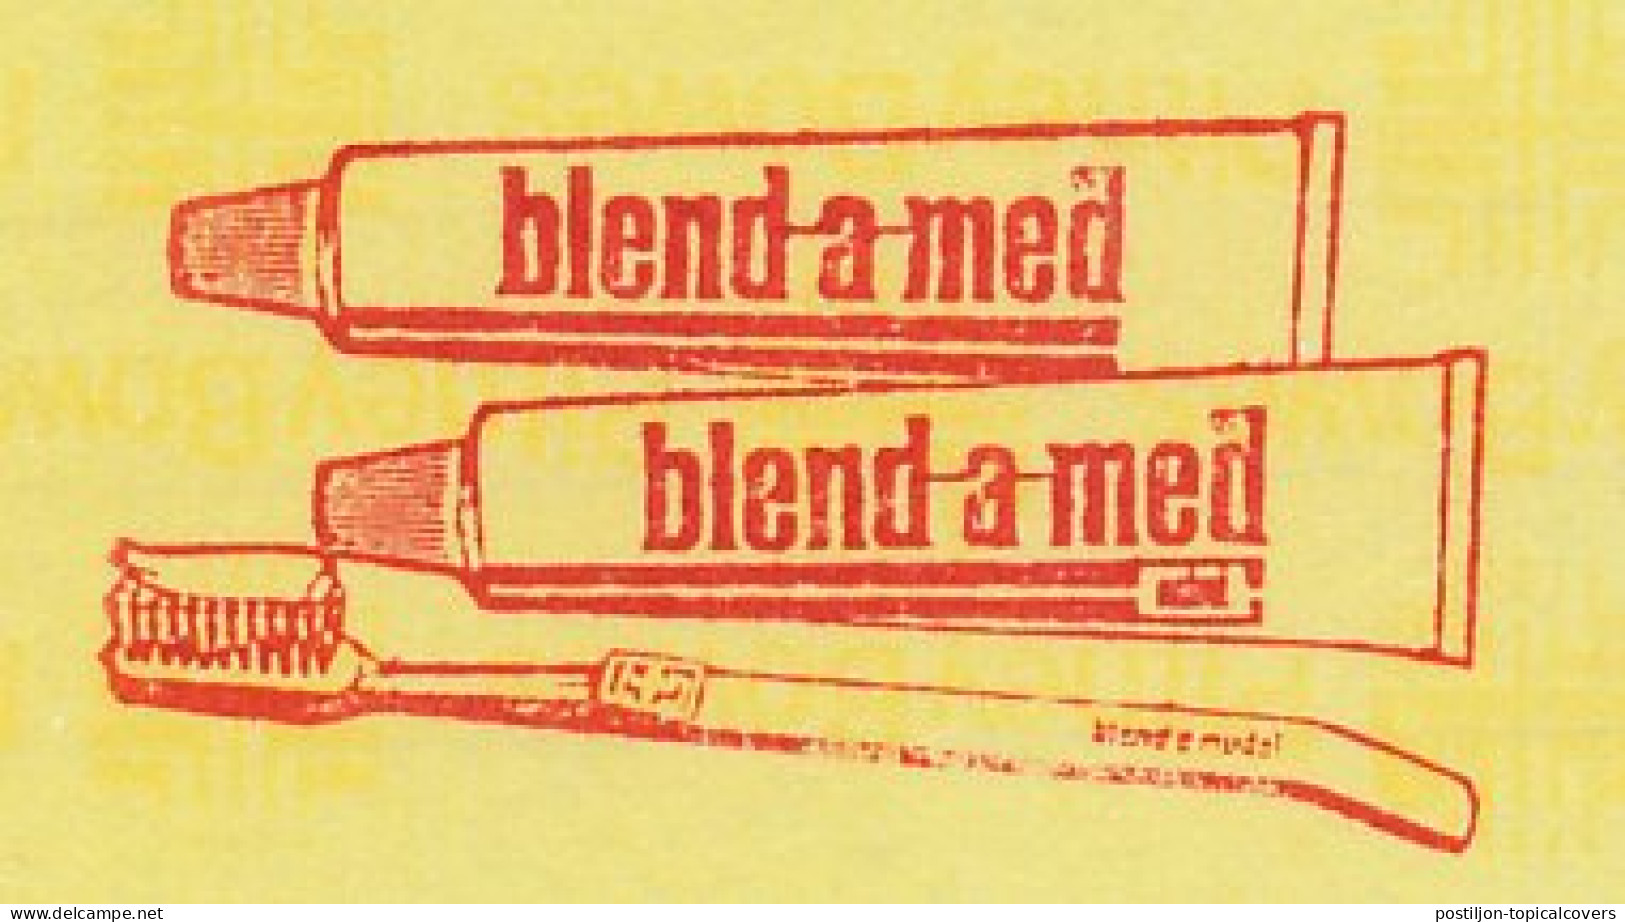 Meter Proof / Test Strip Netherlands 1982 Toothpaste - Toothbrush - Blend A Med - Geneeskunde